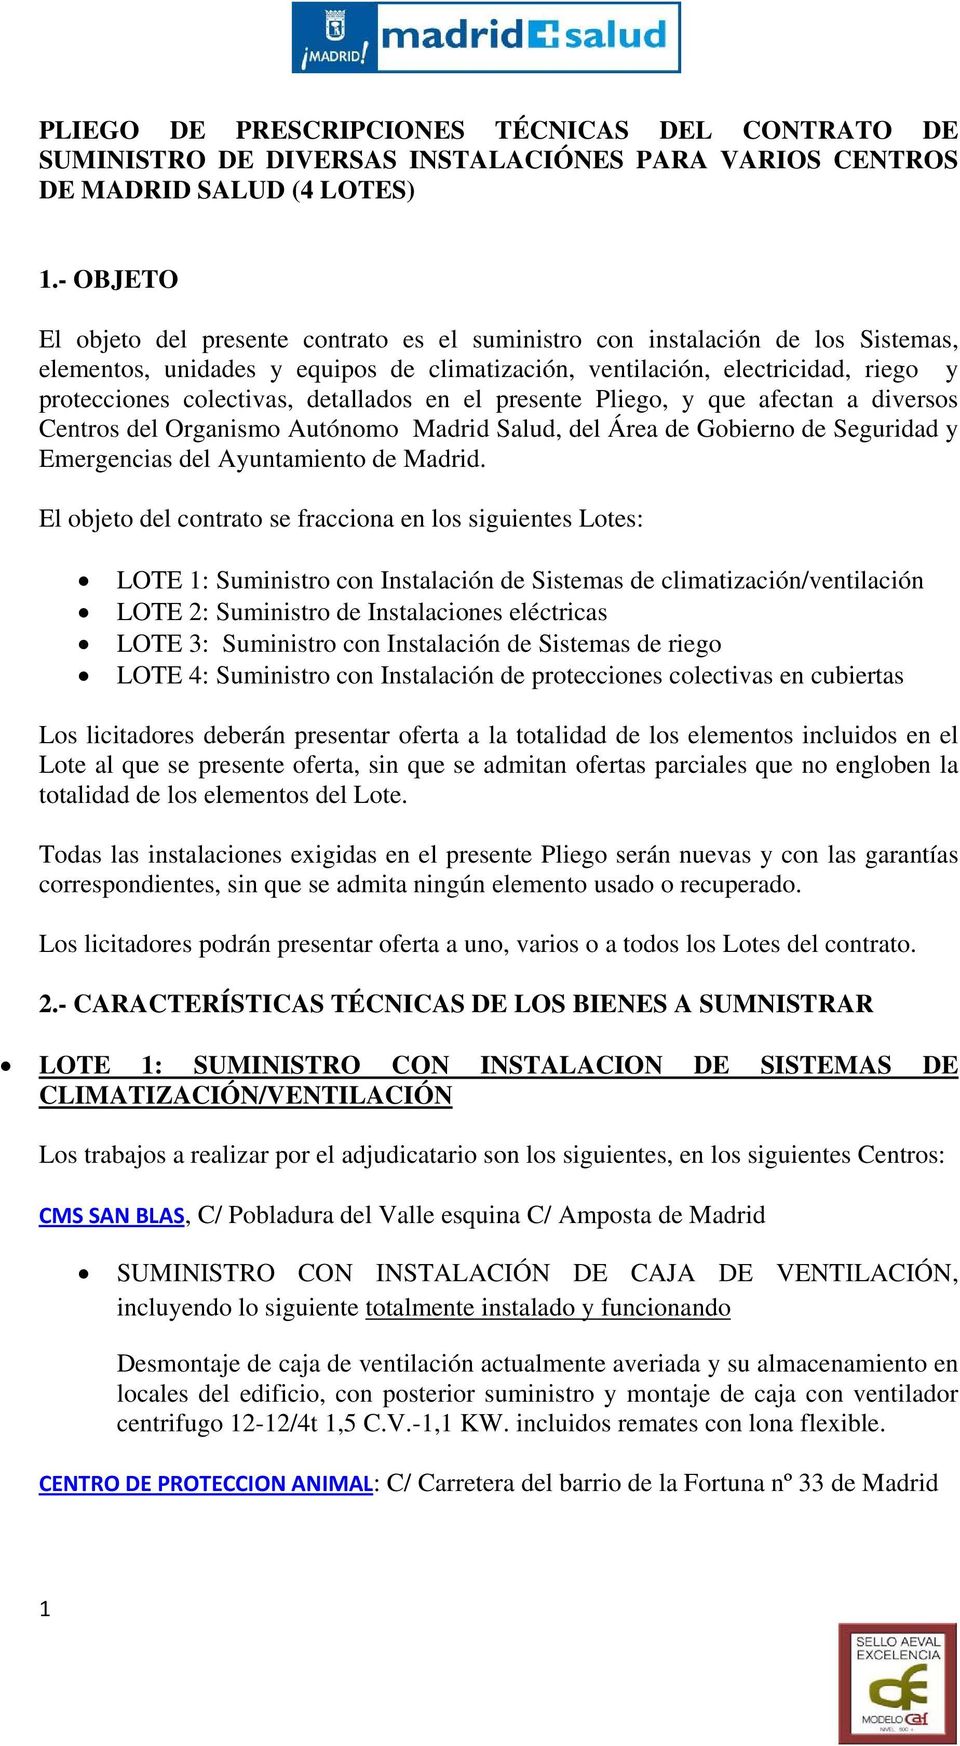 detallados en el presente Pliego, y que afectan a diversos Centros del Organismo Autónomo Madrid Salud, del Área de Gobierno de Seguridad y Emergencias del Ayuntamiento de Madrid.